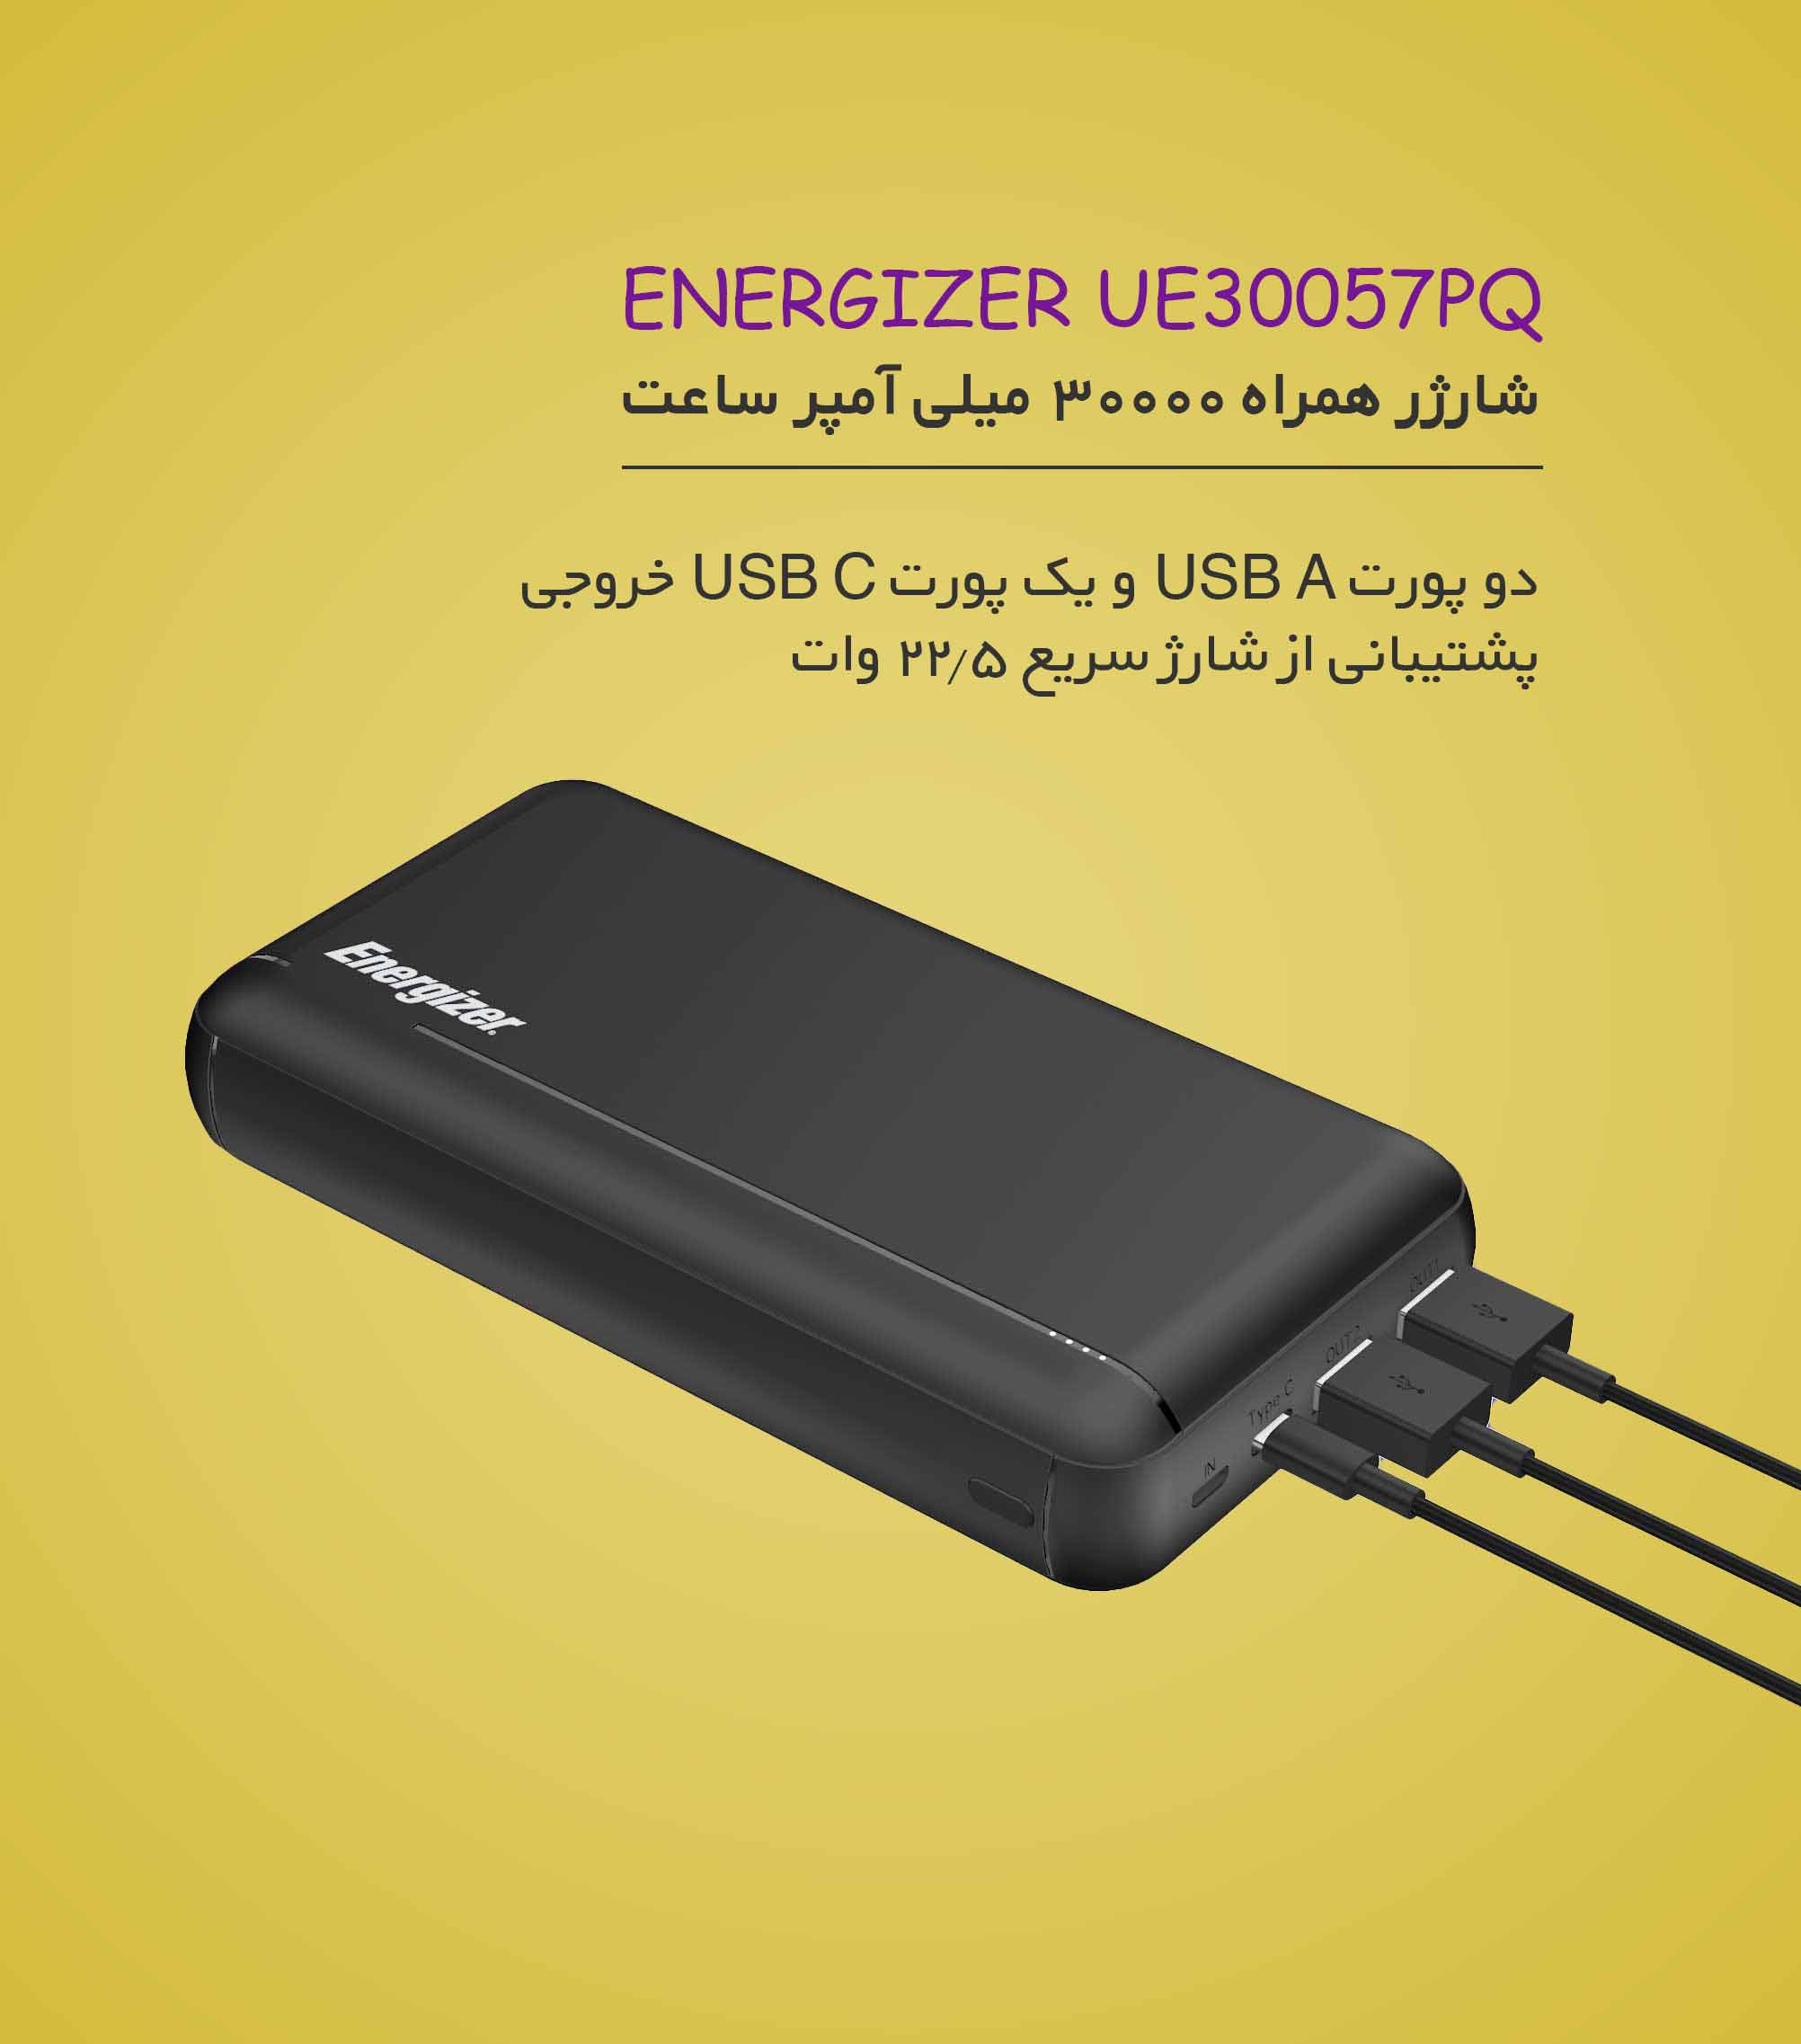 شارژر همراه انرجایزر ENERGIZER UE30057PQ ظرفیت 30000mAh - شبکه ساز